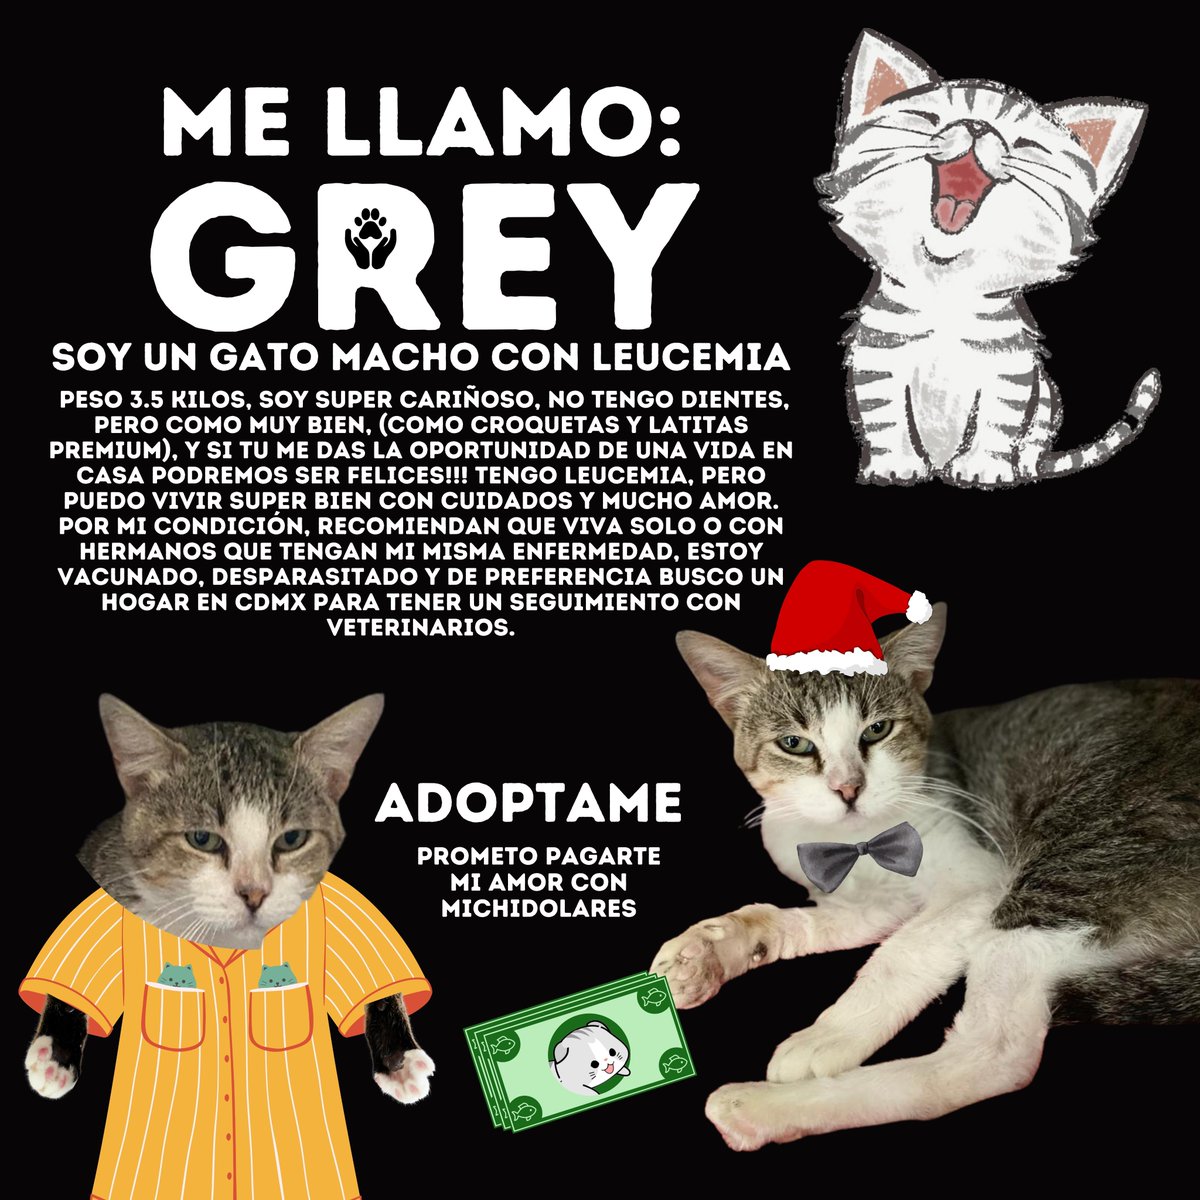 Nos ayudan con miles de RT para encontrar un hogar para un gatito con Leucemia, se llama Grey y merece un hogar amoroso, que lo cuiden mucho y amen mucho mucho contacten a @MeowWorkshop